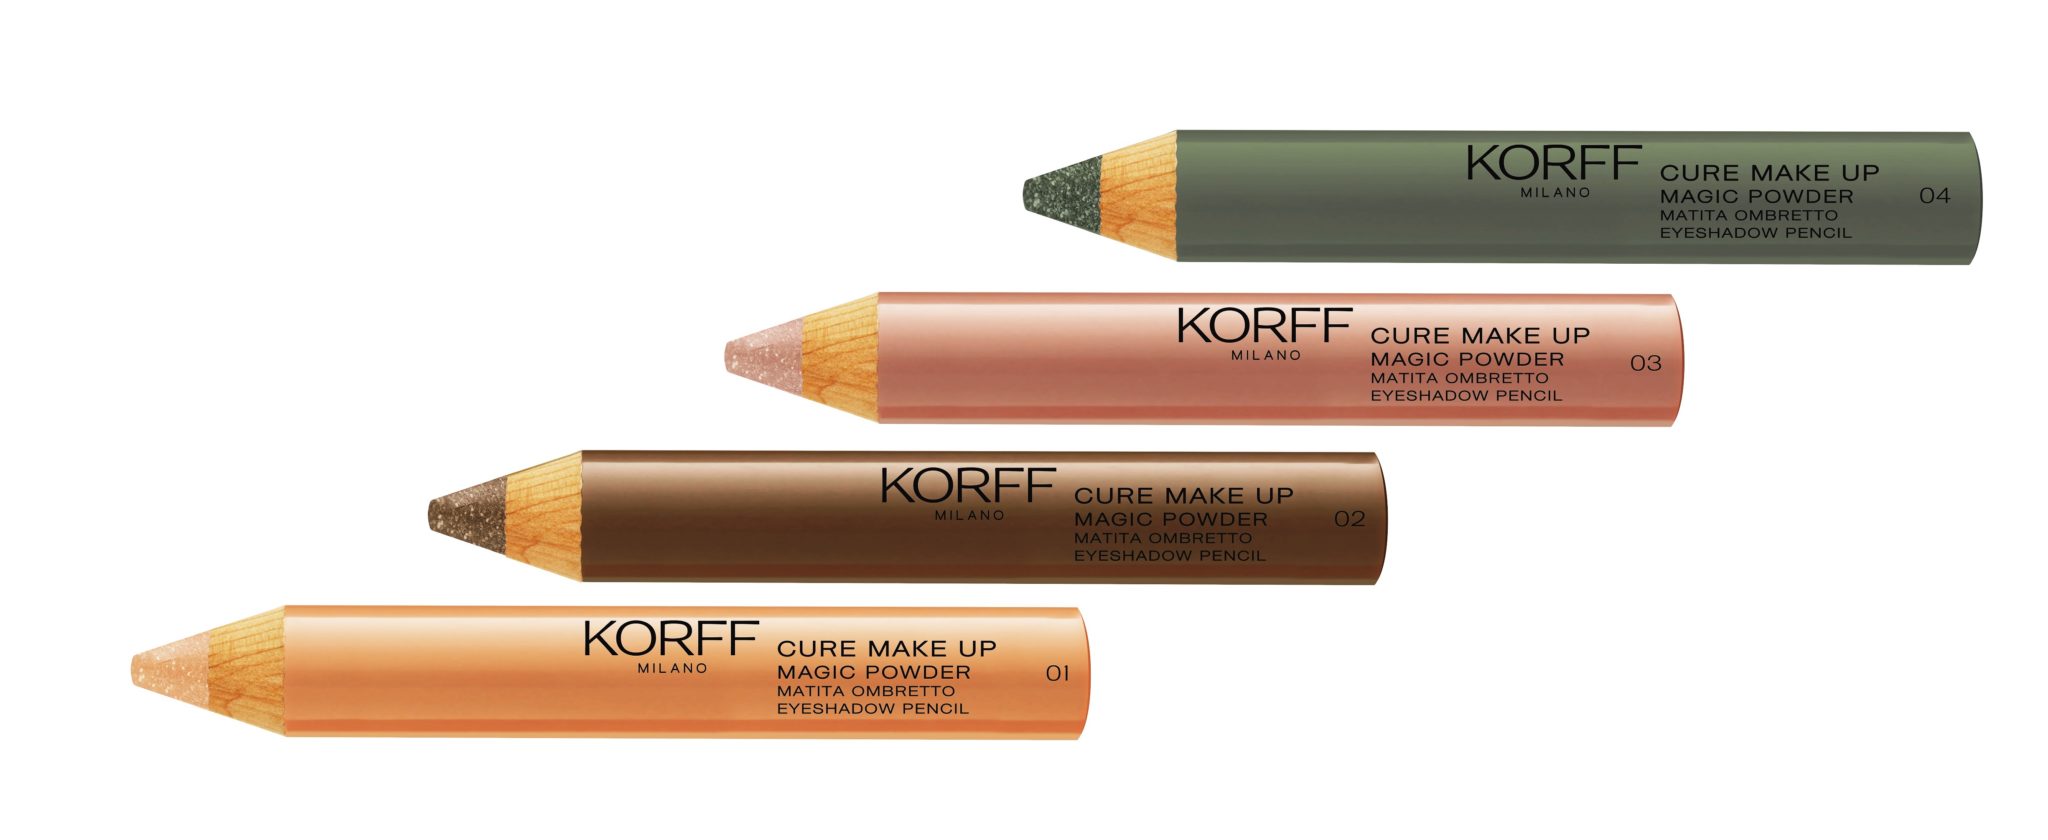 Nuova linea occhi di Korff: nuovi mascara e colori più forti e intensi